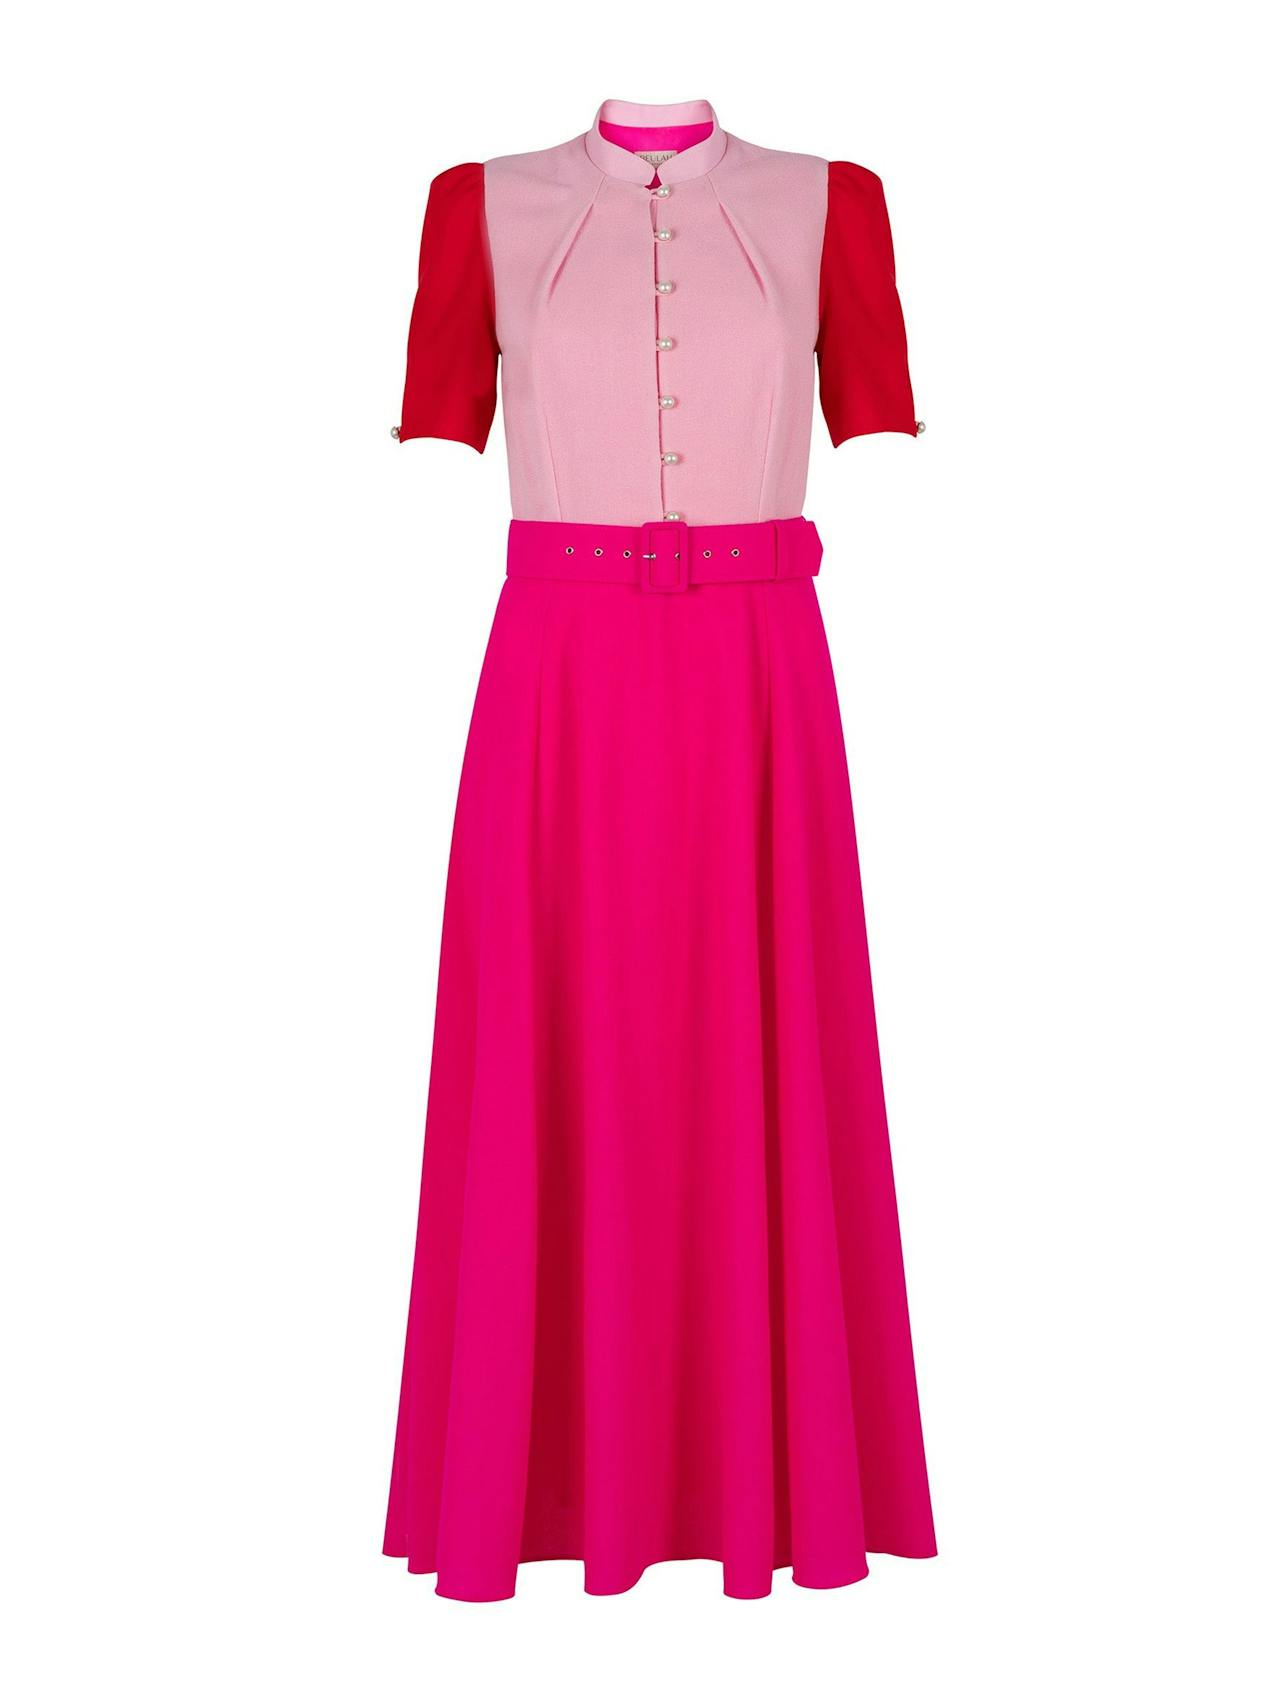 Ahana multi rose short sleeve dress